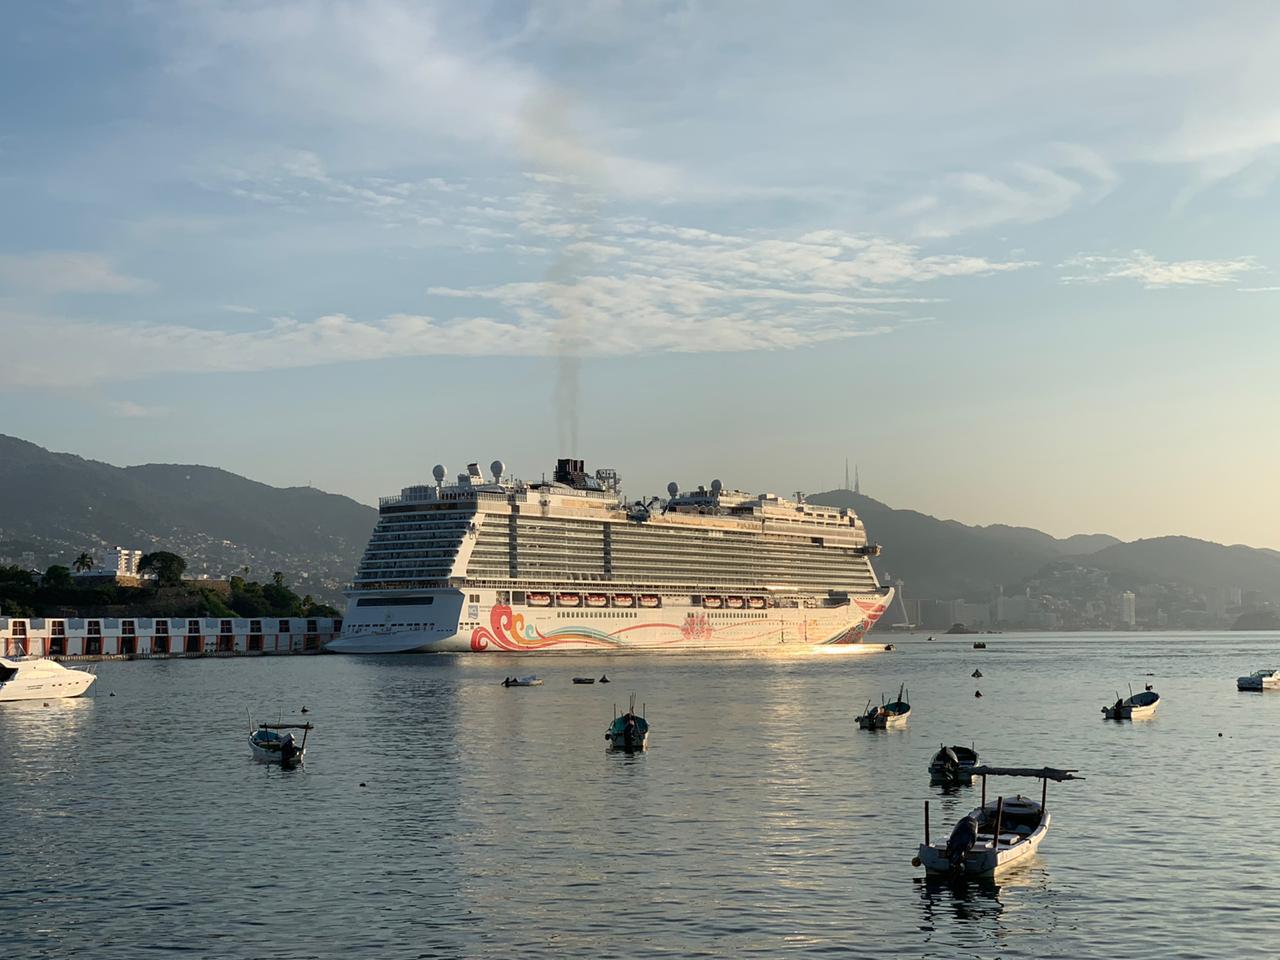 Arriba crucero a la bahía de Acapulco con 5 mil 300 pasajeros y tripulantes